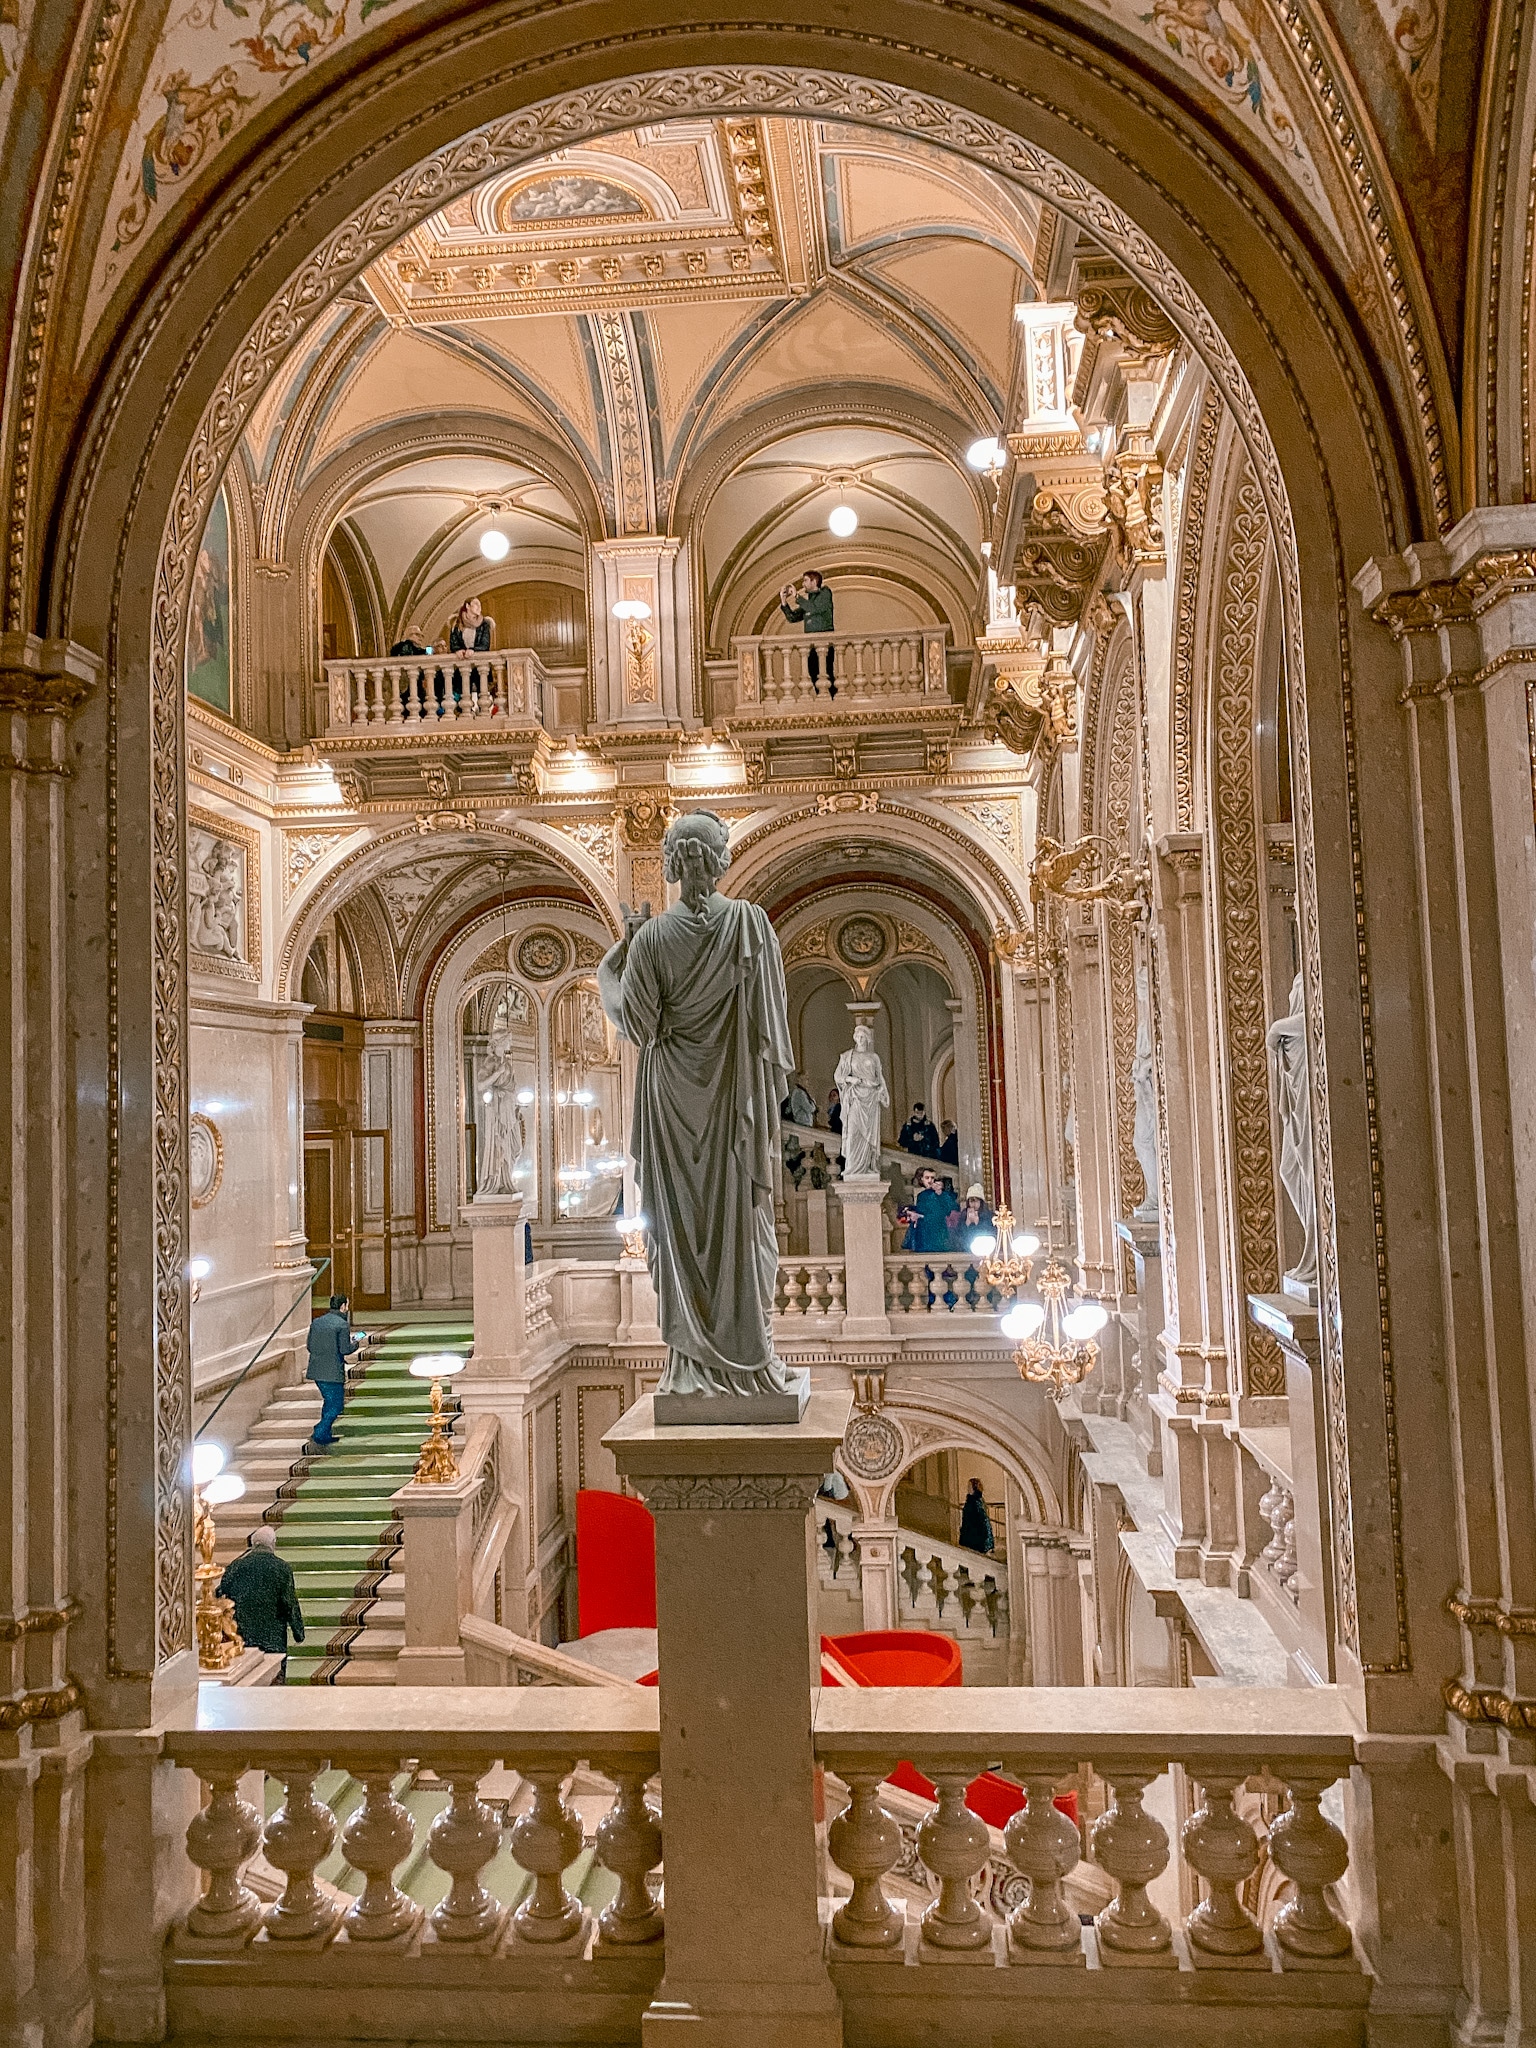 The beautiful interior of Wiener Staatsoper (Vienna State Opera House). 